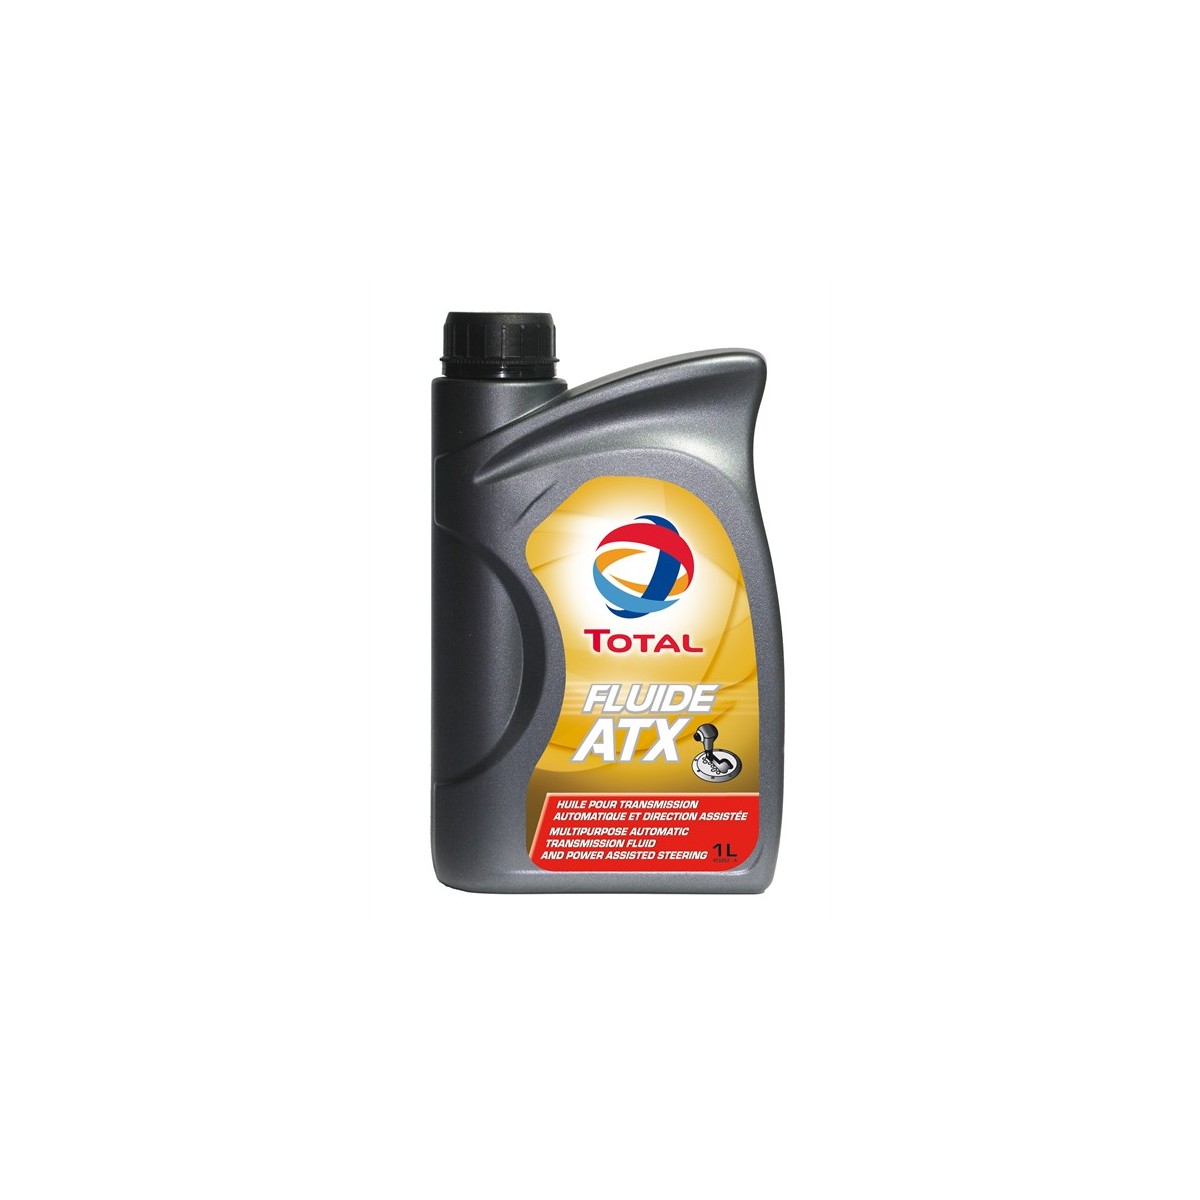 [W126] Contrôle de niveau d’huile de la BVA Total-fluide-atx